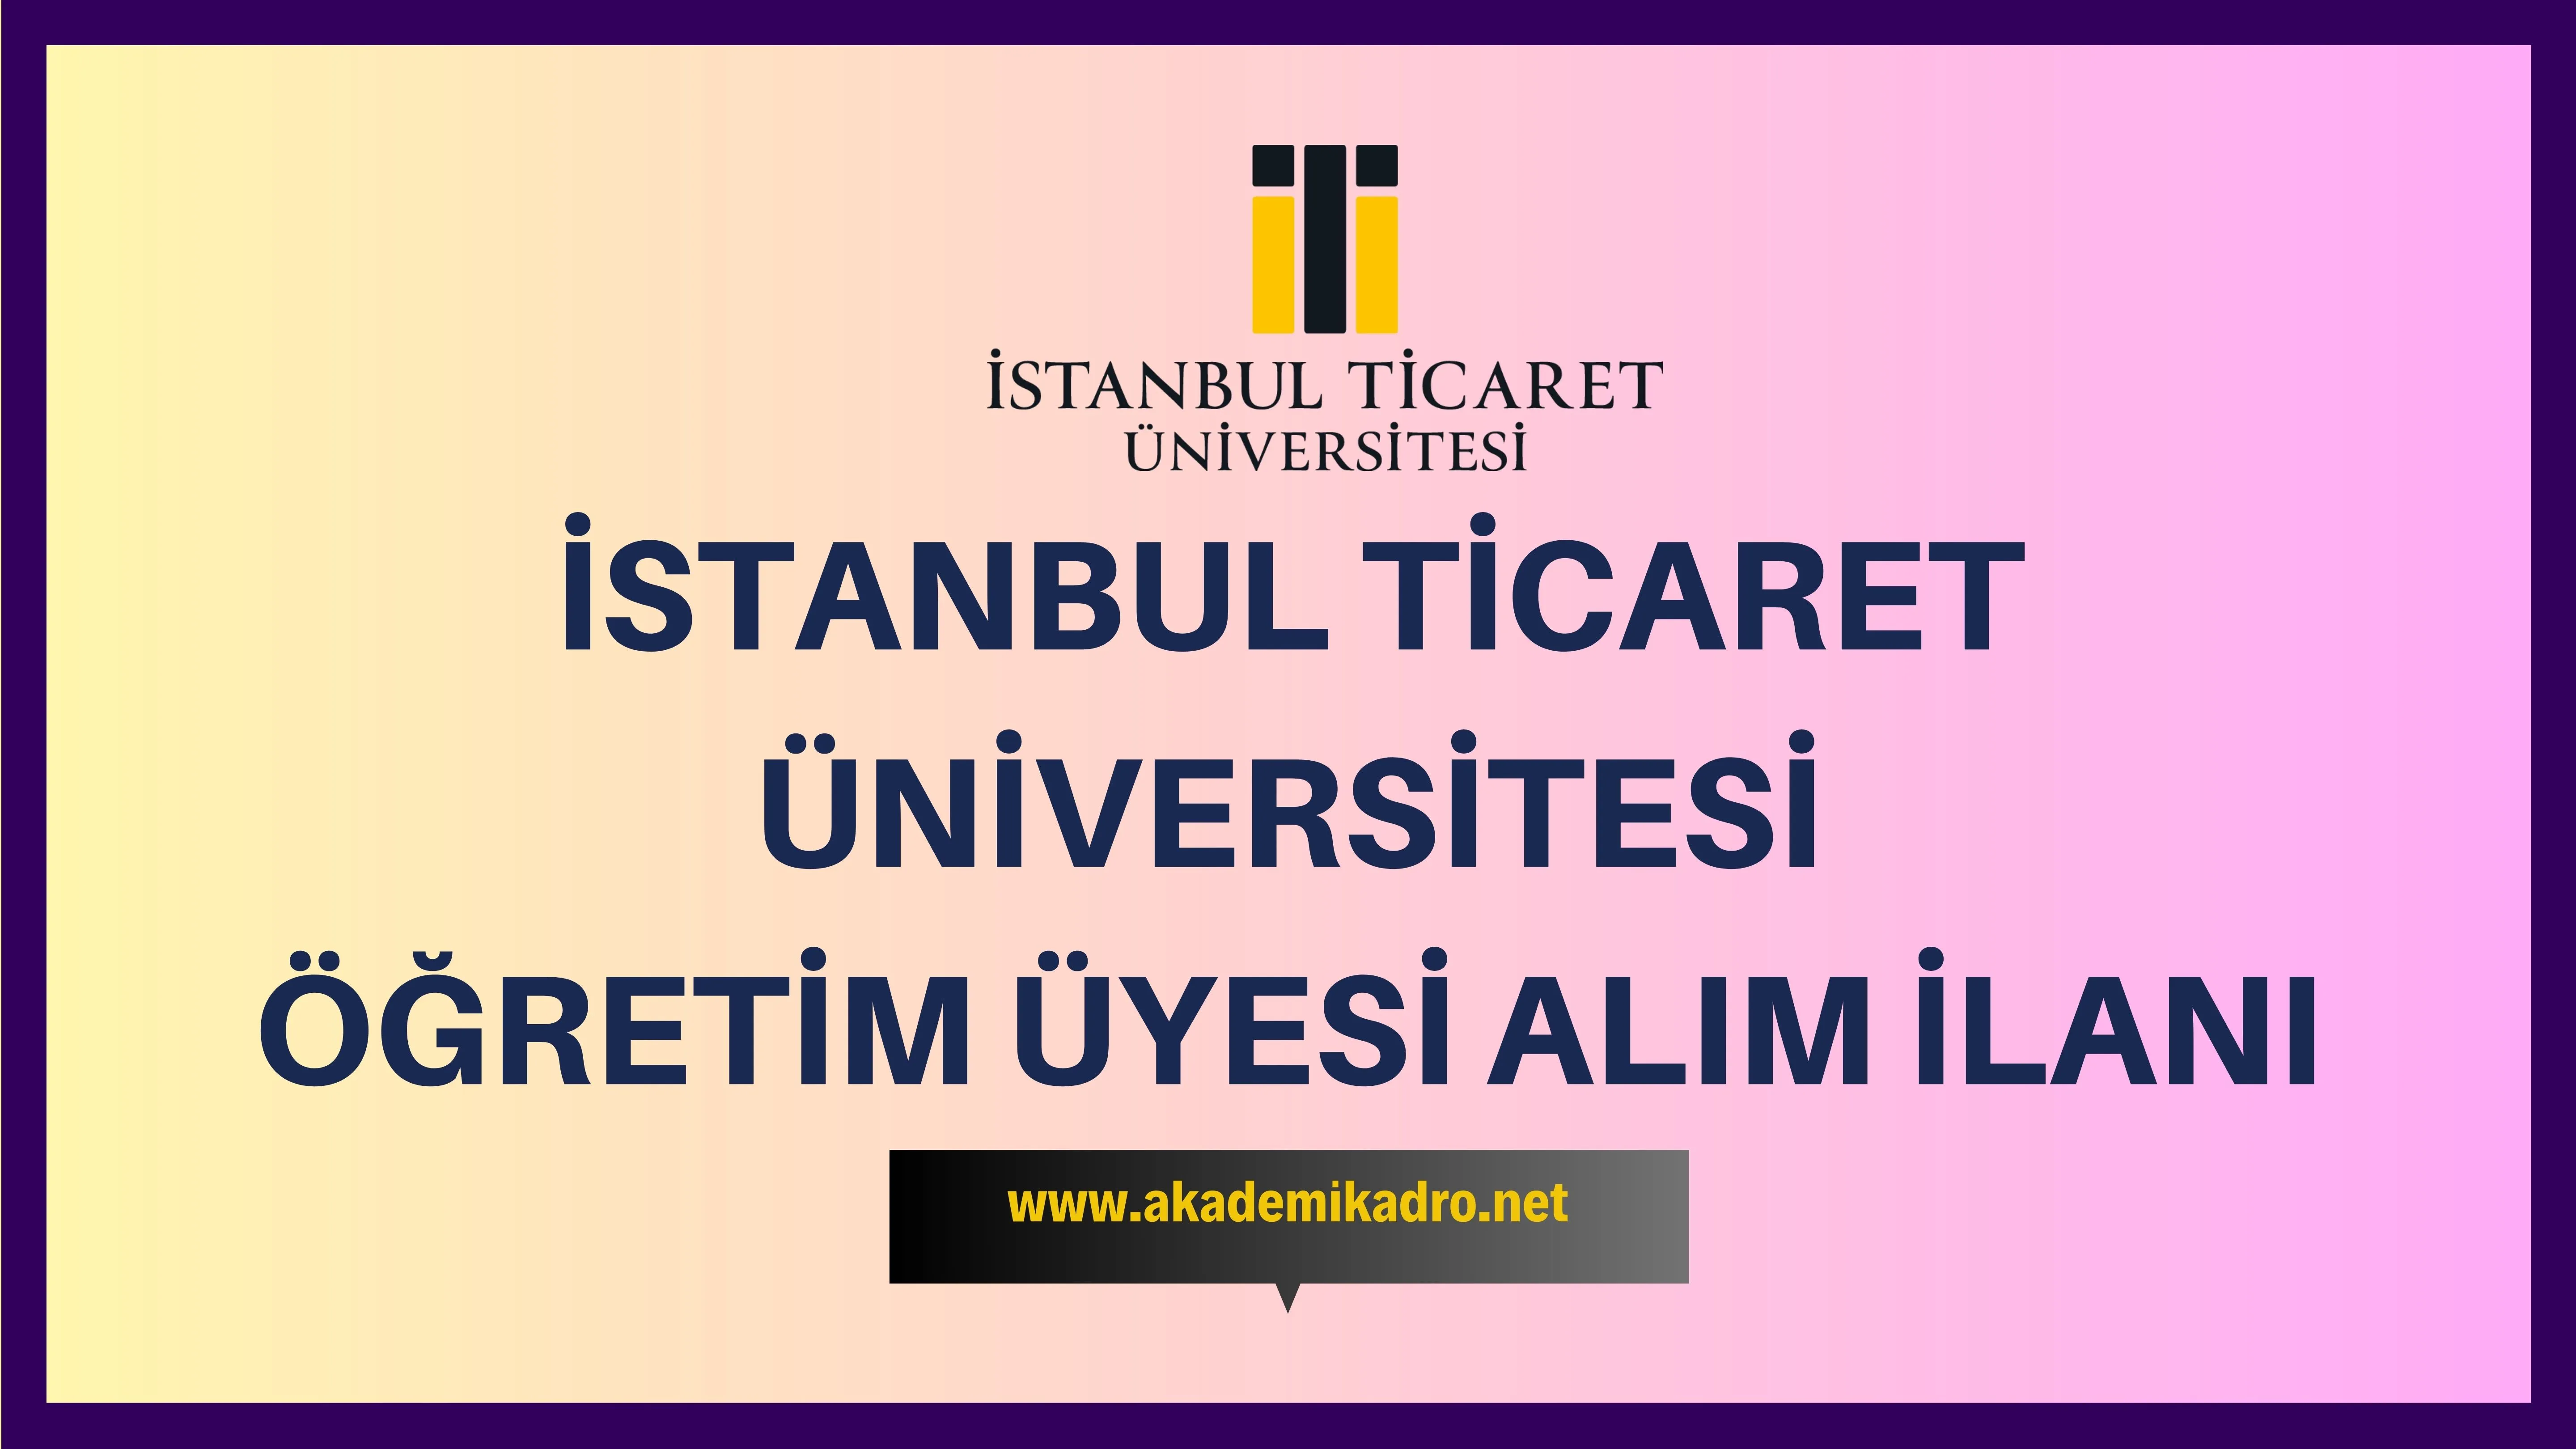 İstanbul Ticaret Üniversitesi çeşitli branşlarda 5 Öğretim üyesi alacak.